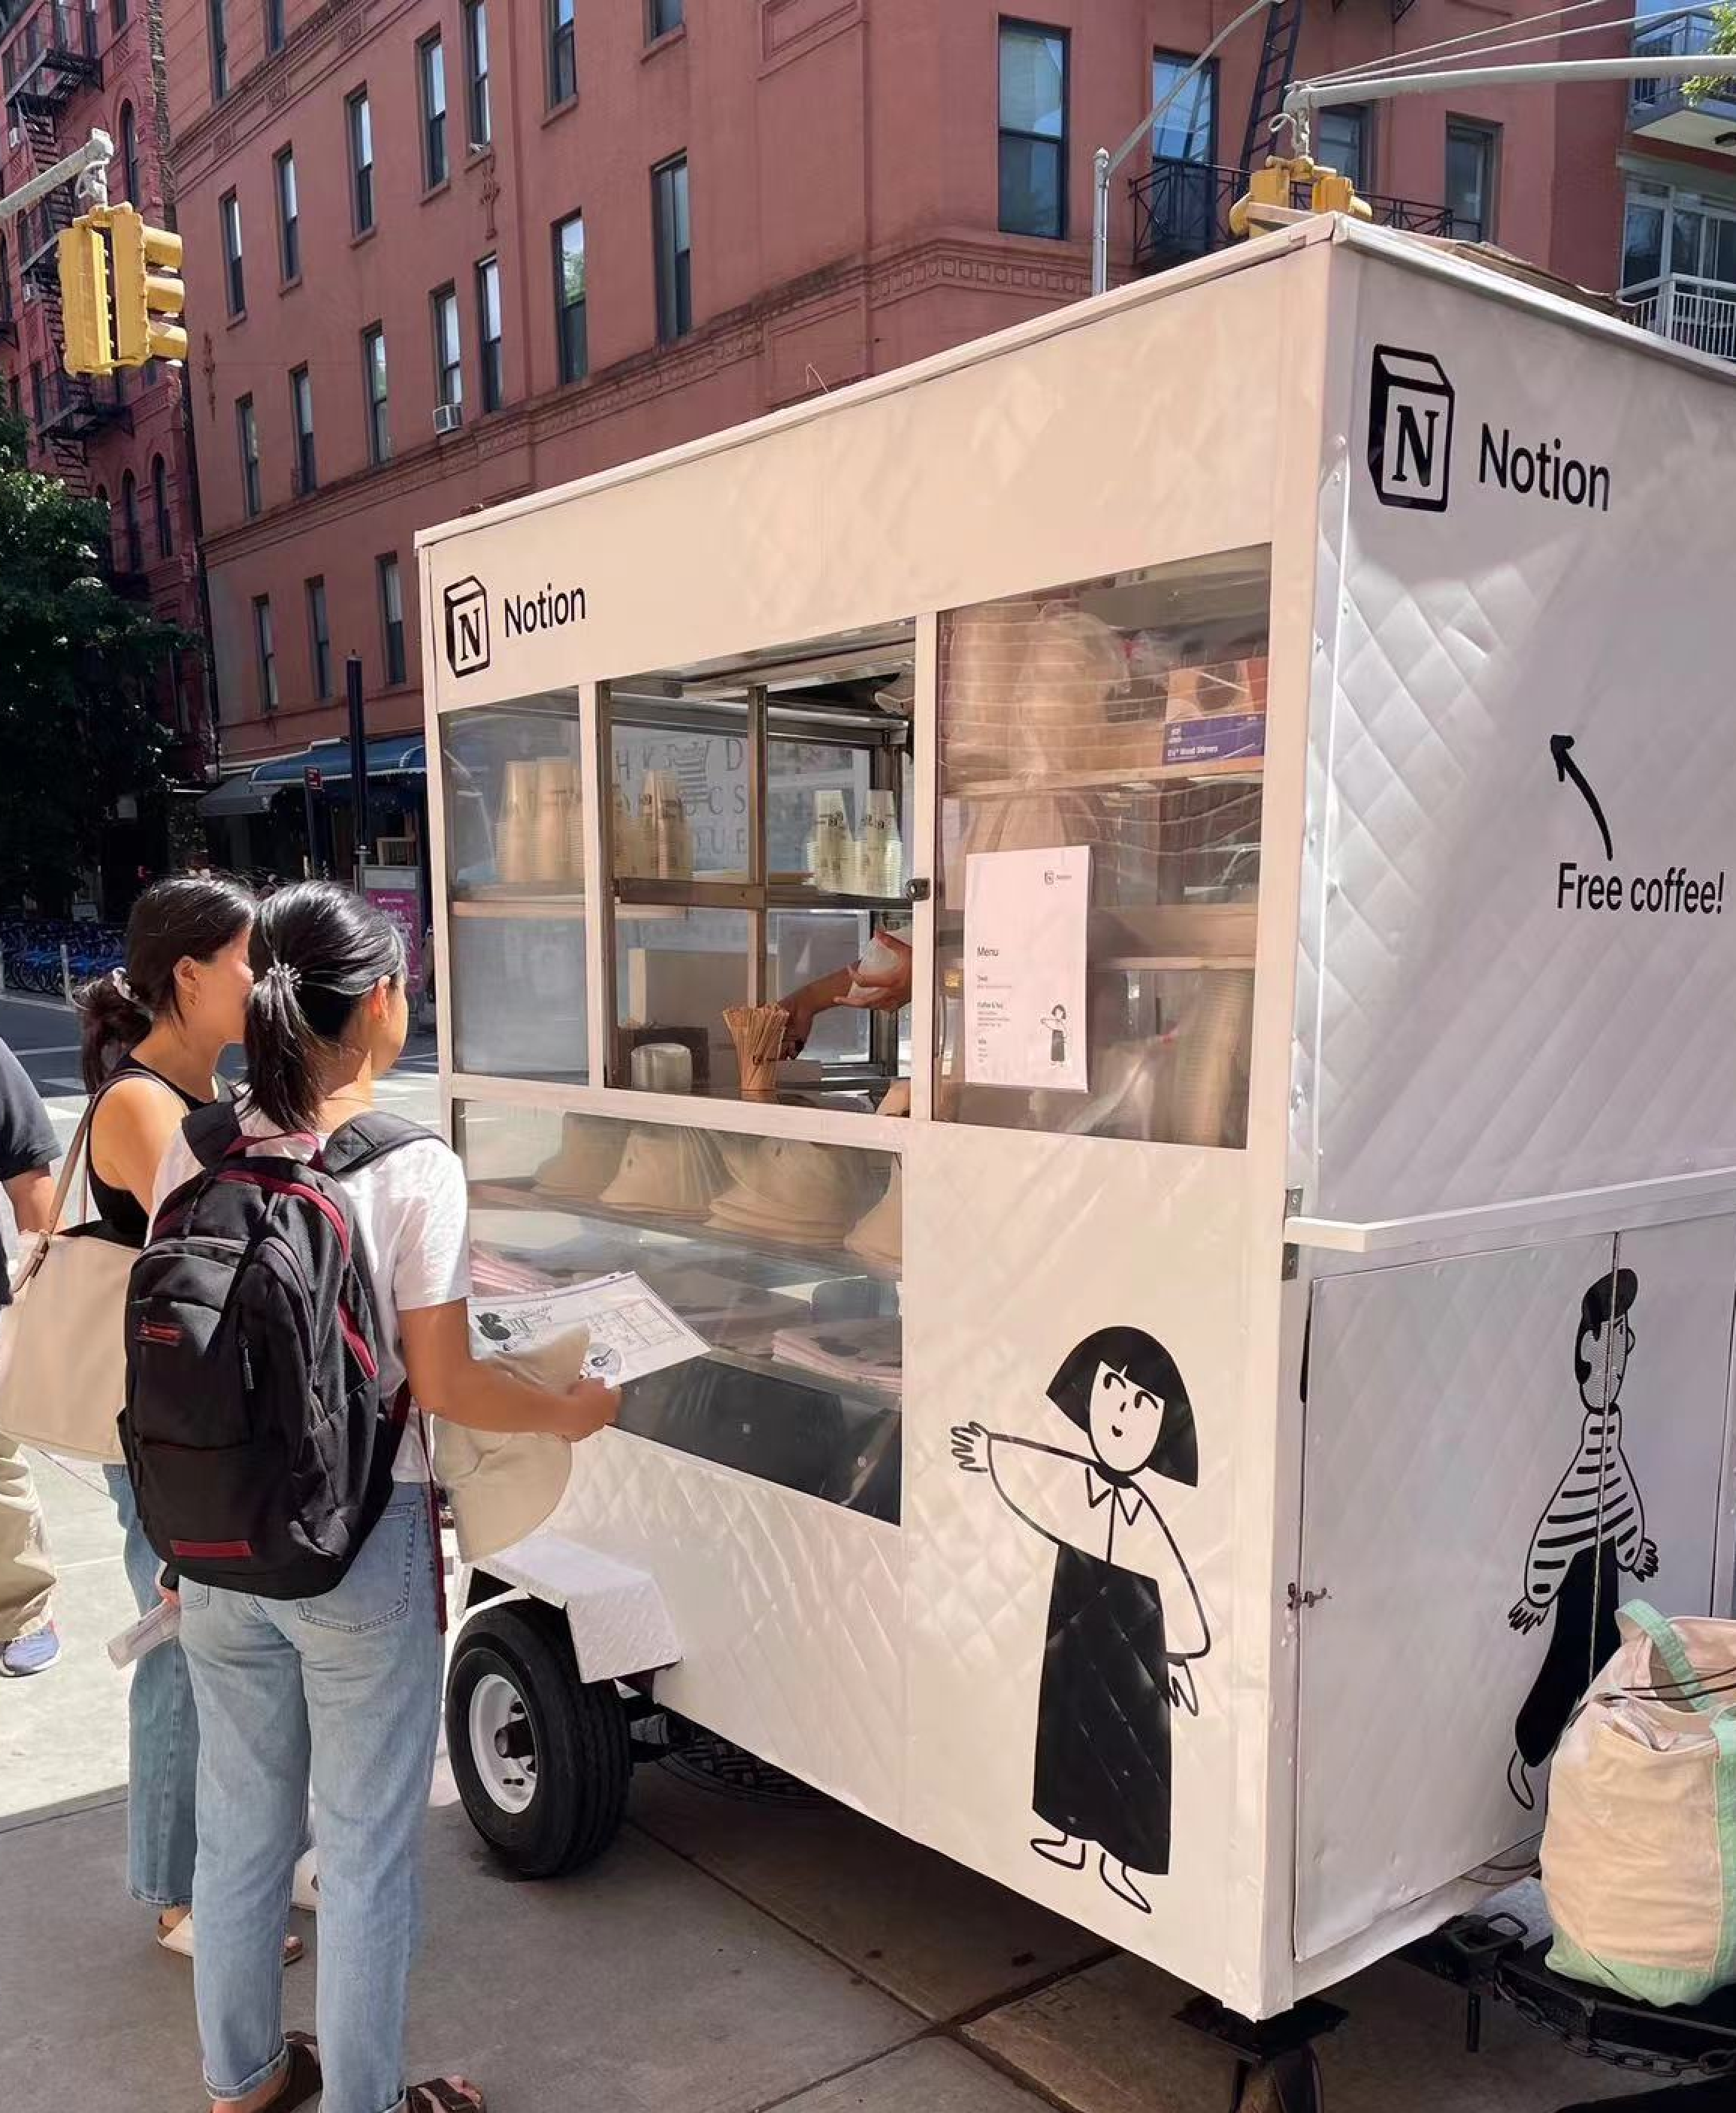 这是 Notion 在曼哈顿街头做推广，移动奶茶小推车，怪可爱的(╹▽╹)